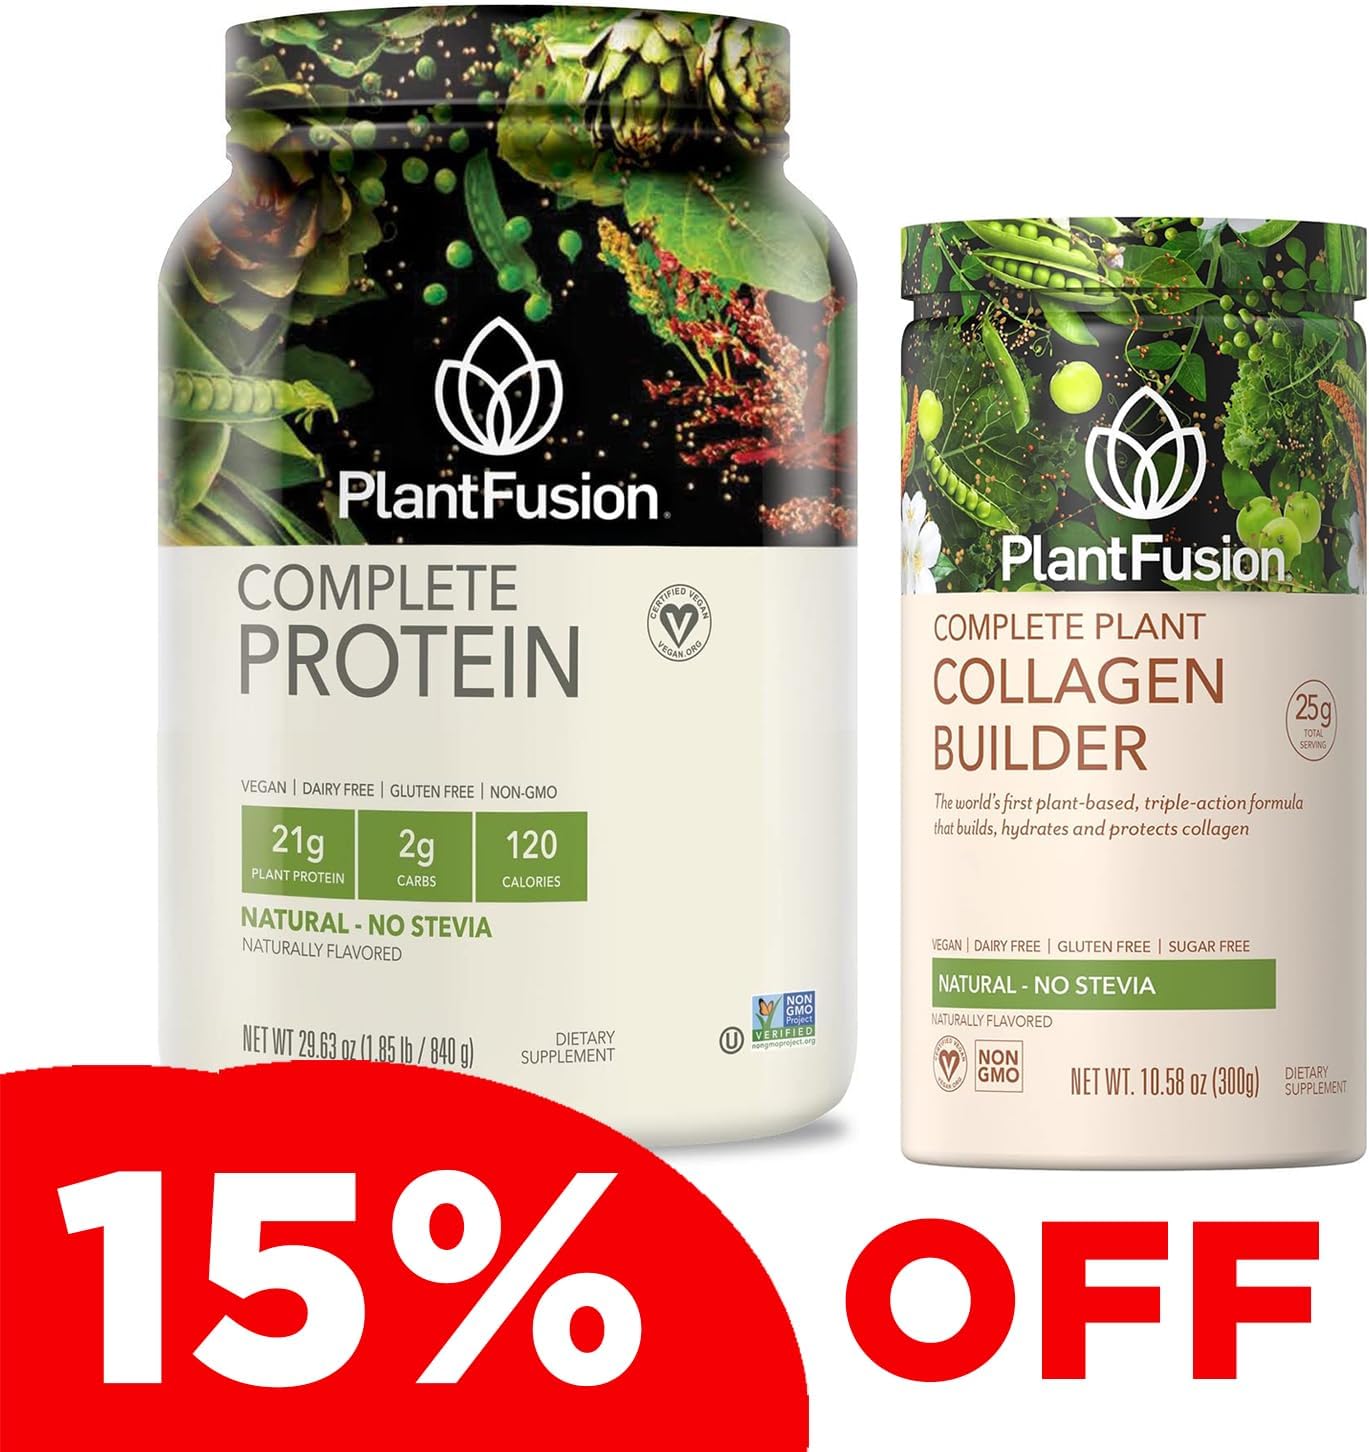 PlantFusion Complete Vegan Protein Powder and Collagen Bundle - Keto, Gluten Free, Soy Free, Non-Dairy, No Sugar, Non-GMO - Unflavored, No Stevia